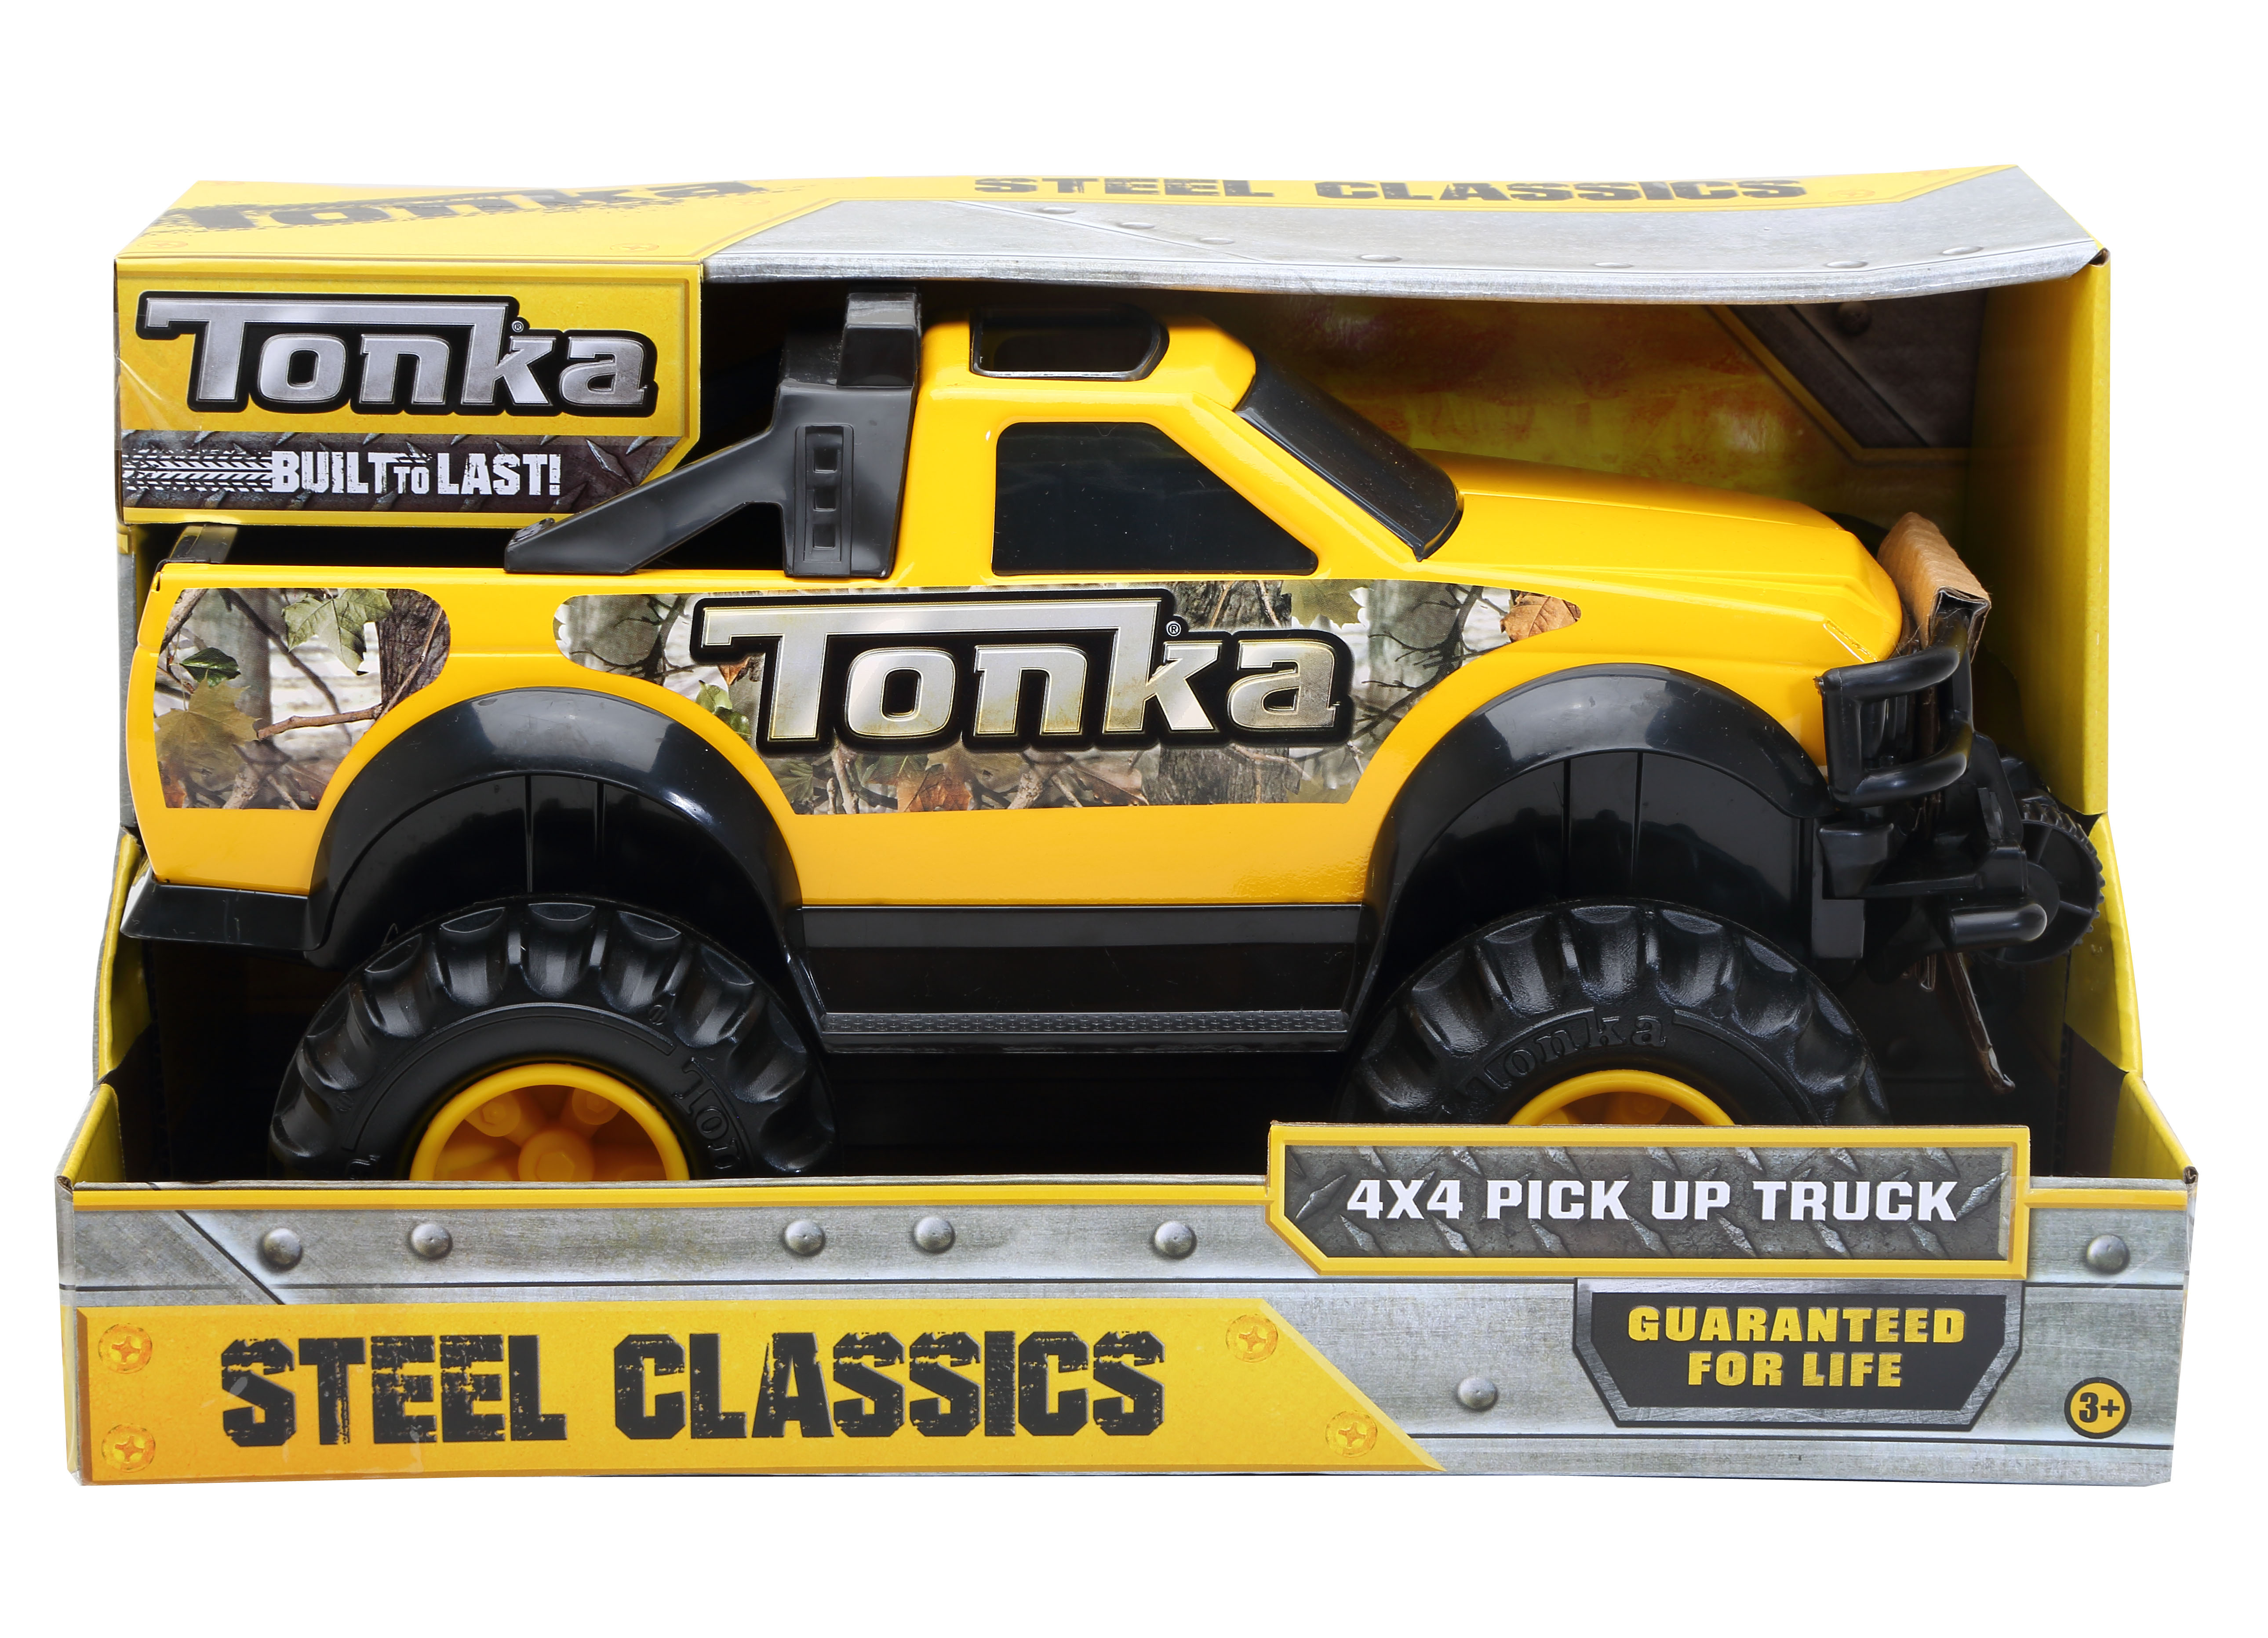 Steel Classics 4x4 Pick Up Truck Tonka 